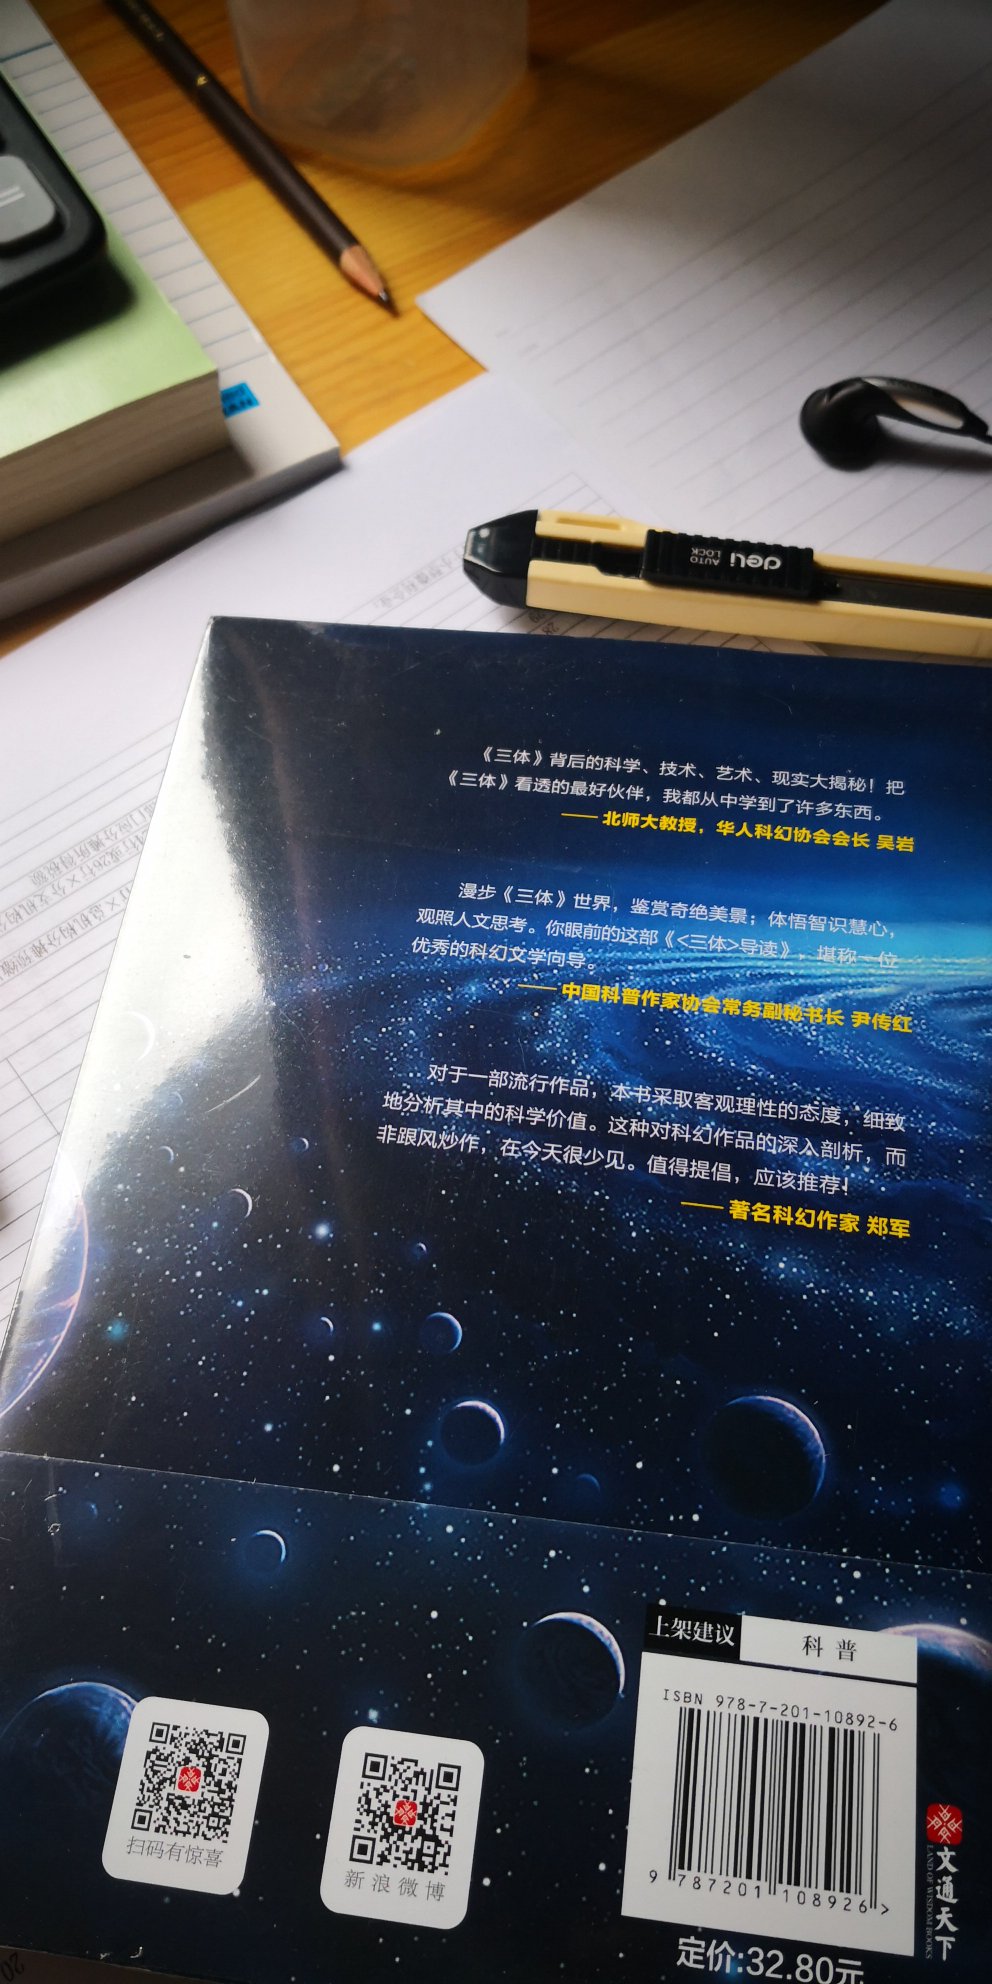 之前拜读过刘慈欣的现象级科幻大作典藏版《三体》～还是有很多没搞懂地方，也许是囫囵吞枣速度过快的缘故吧，亦或是别太较真。弄本导读，看看有没解惑的点能Get到。